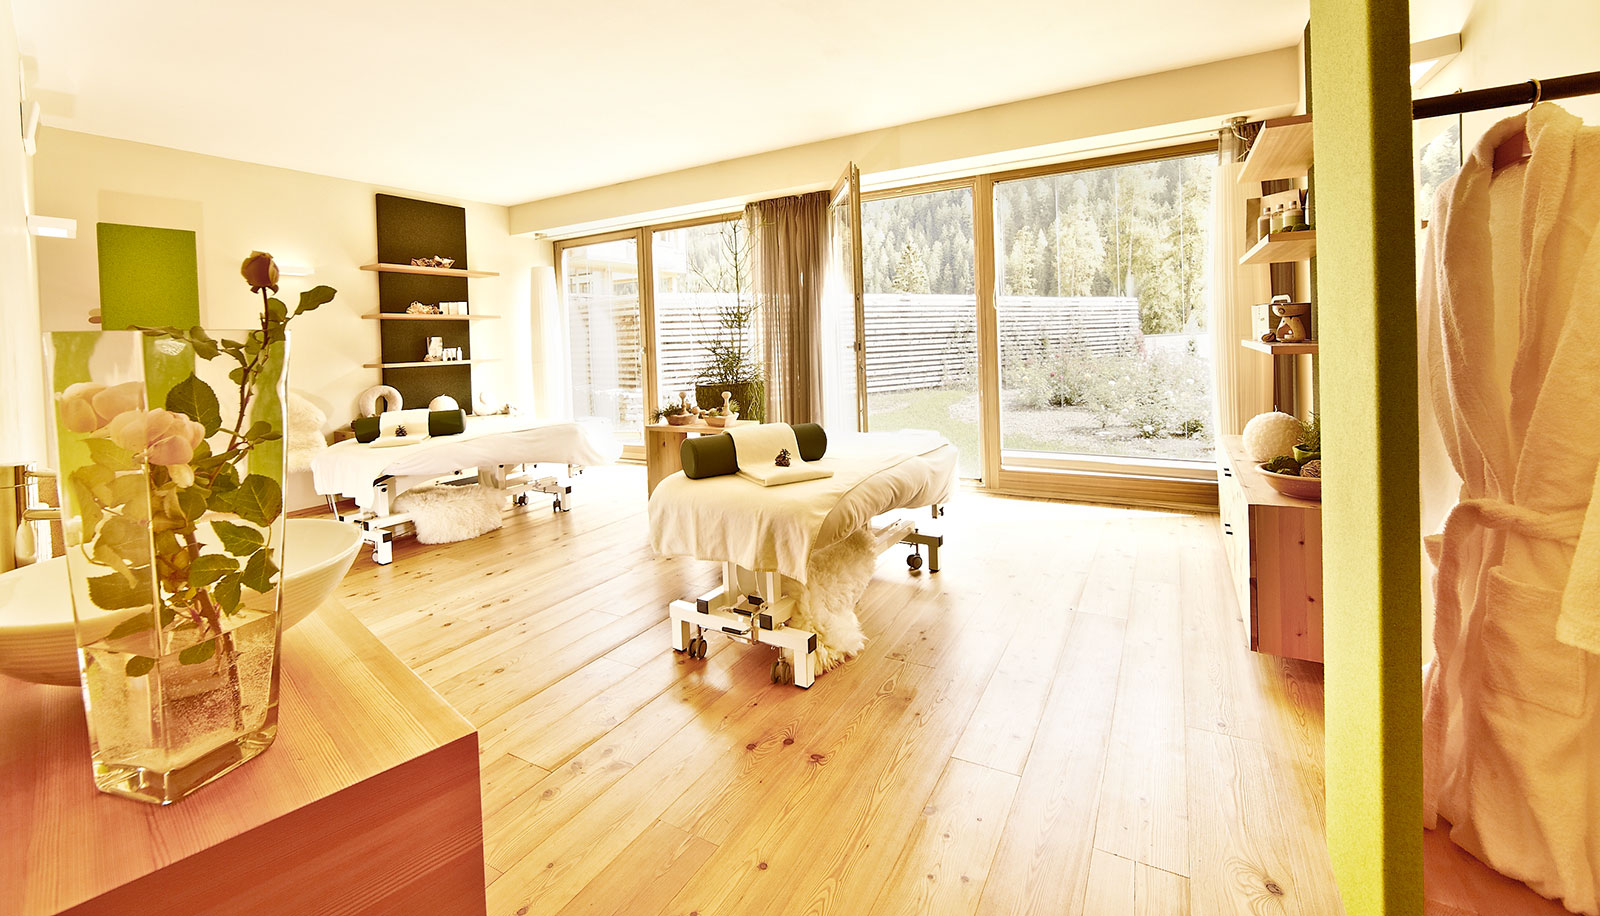 Behandlungsraum des Arosea Hotels im Ultental mit Massagebetten, Holzboden und Blick auf den Garten